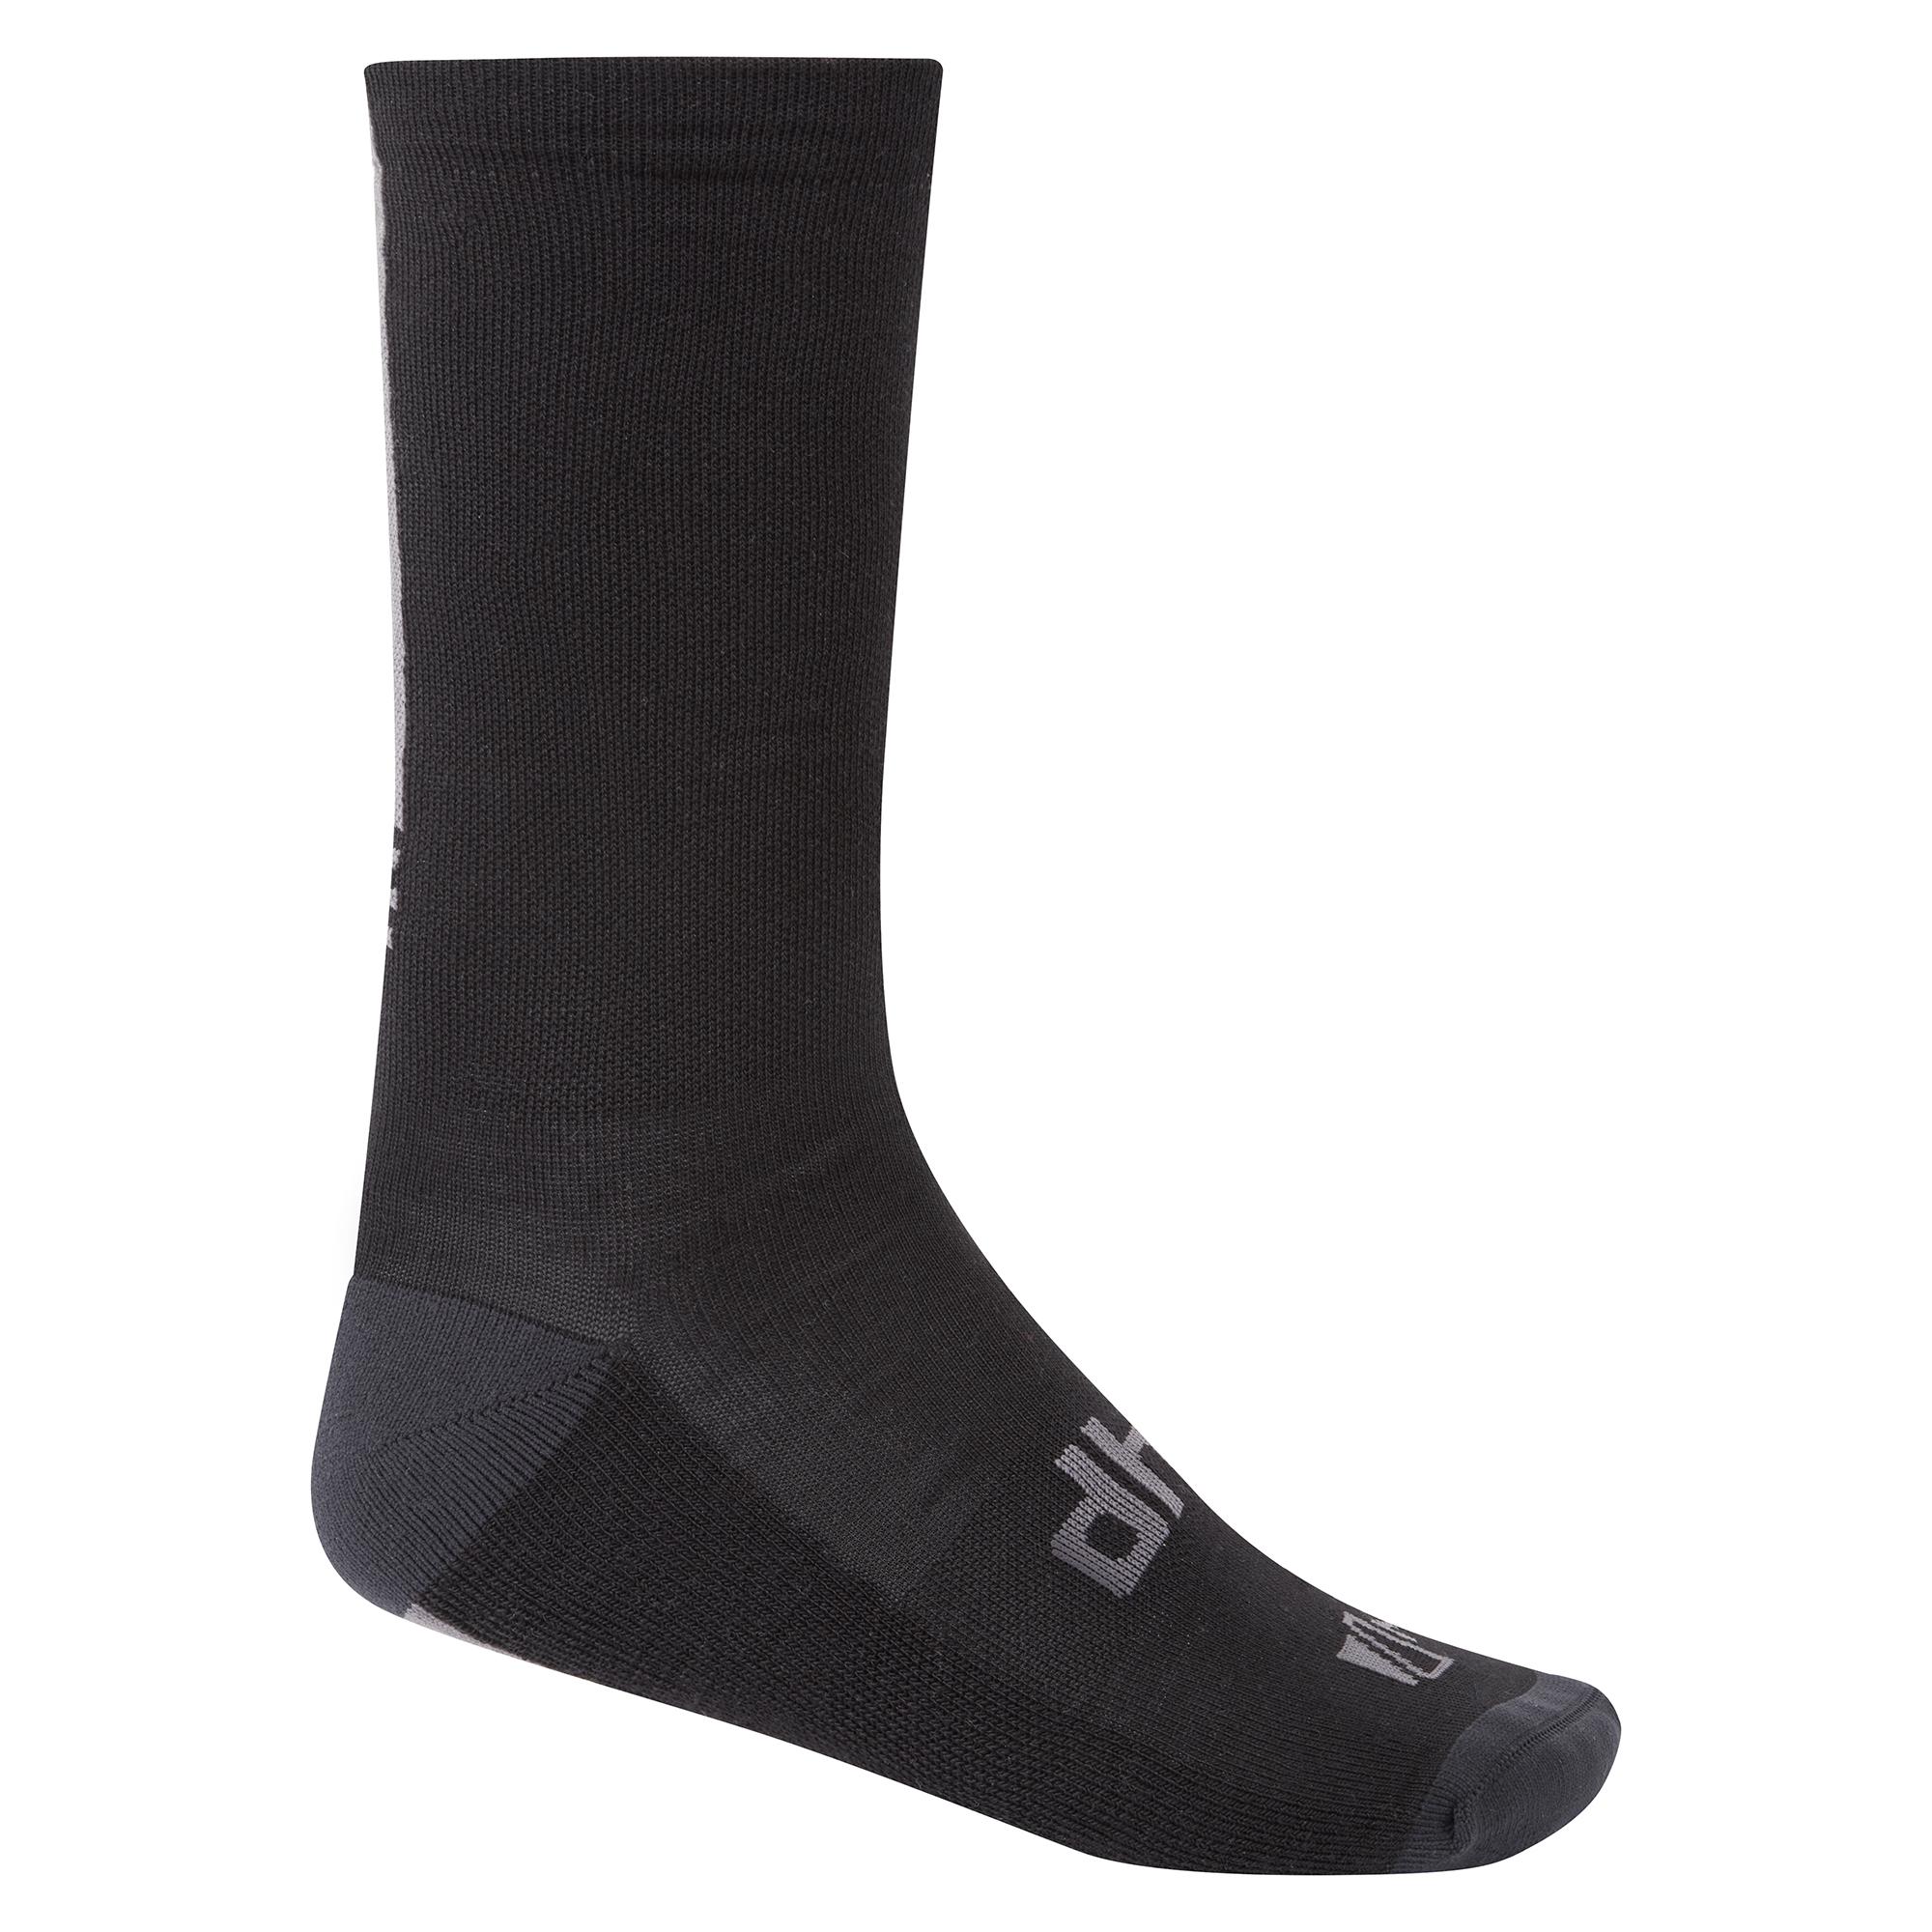 Dhb Aeron Merino Sock 2.0 - Black/grey